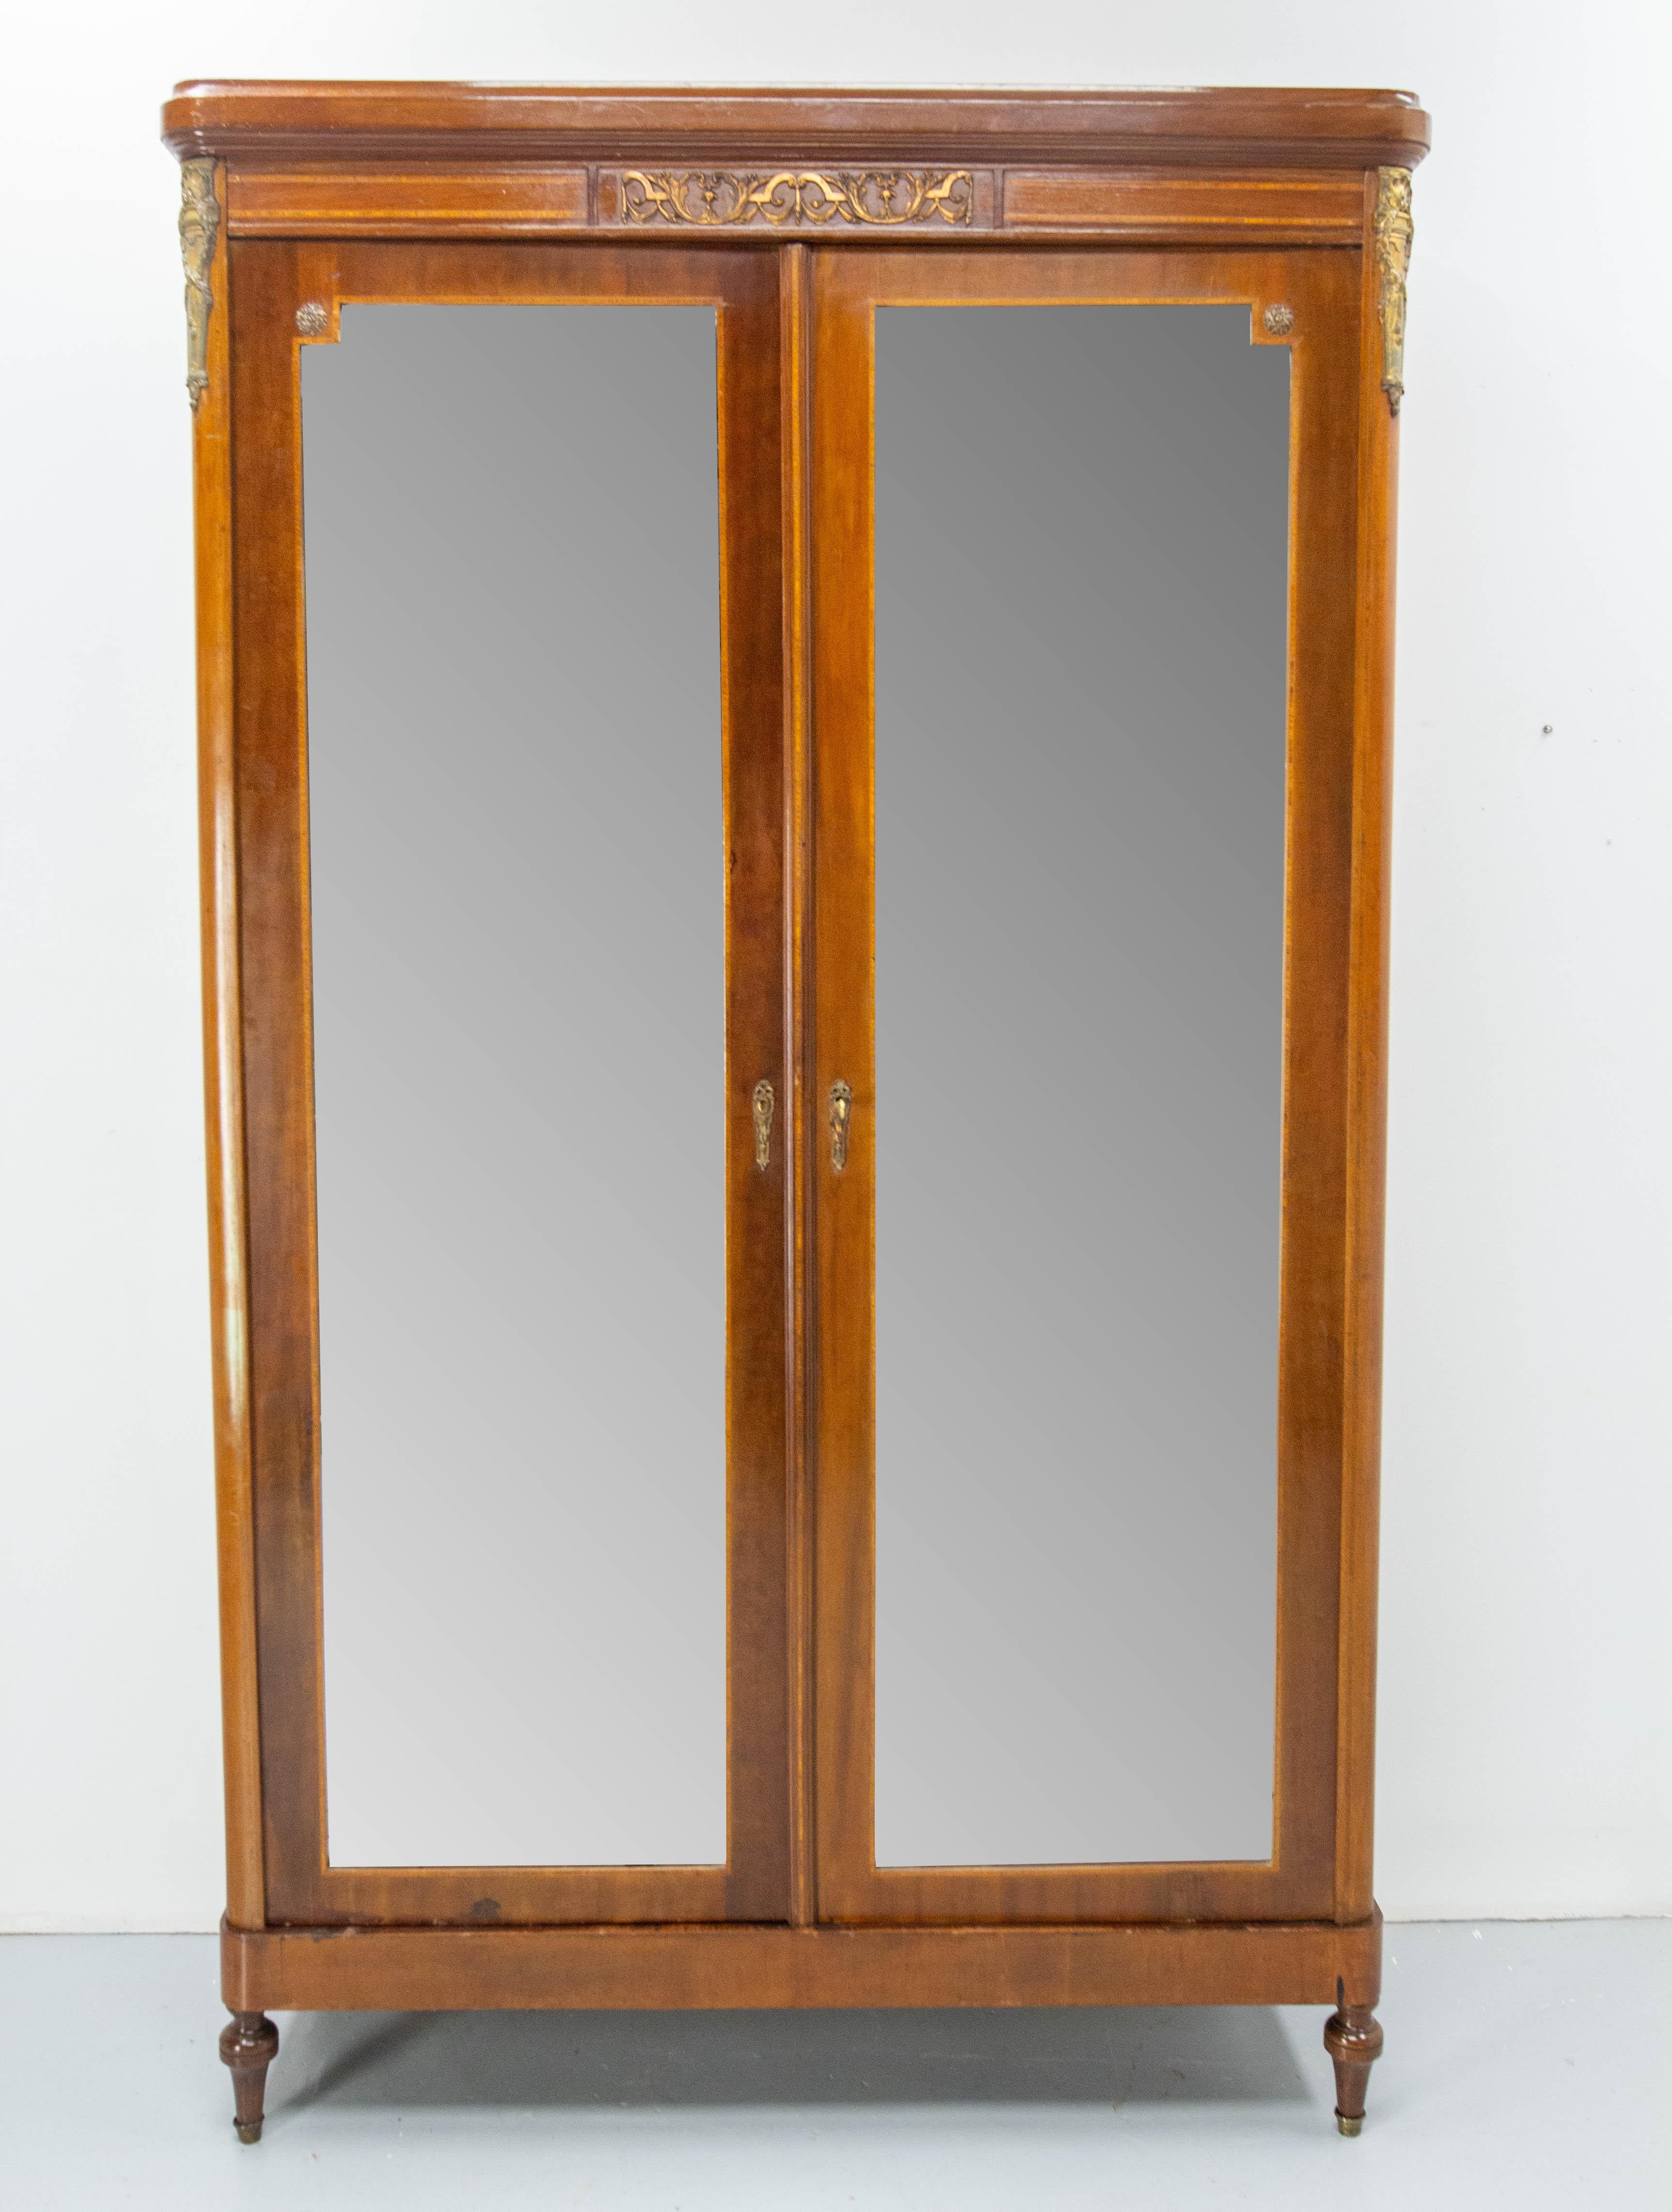 Französischer Kleiderschrank mit zwei abgeschrägten Spiegeln
Revival Louis 16-Stil Iroko-Furnier und Messing.
Innen mit Regalen und zwei kleinen Schubladen ausgestattet.
Zwei Türen mit einer Klappe.
Hergestellt um 1900.
Guter Zustand, mit Spuren der